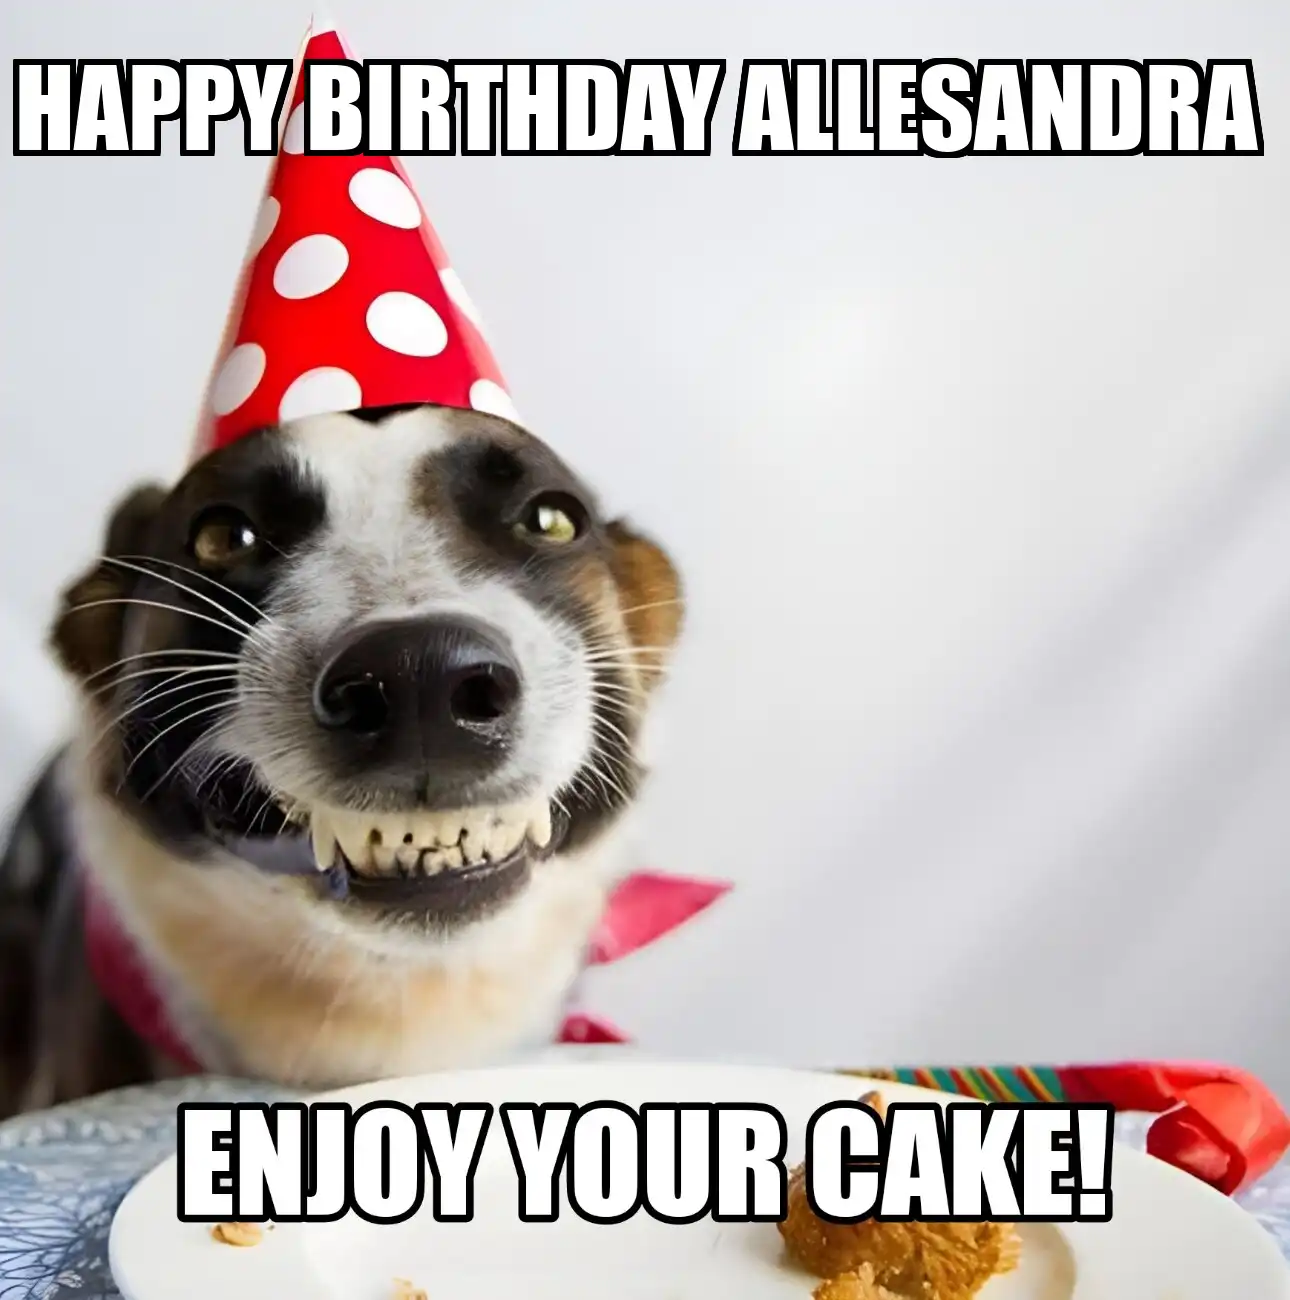 Happy Birthday Allesandra Enjoy Your Cake Dog Meme